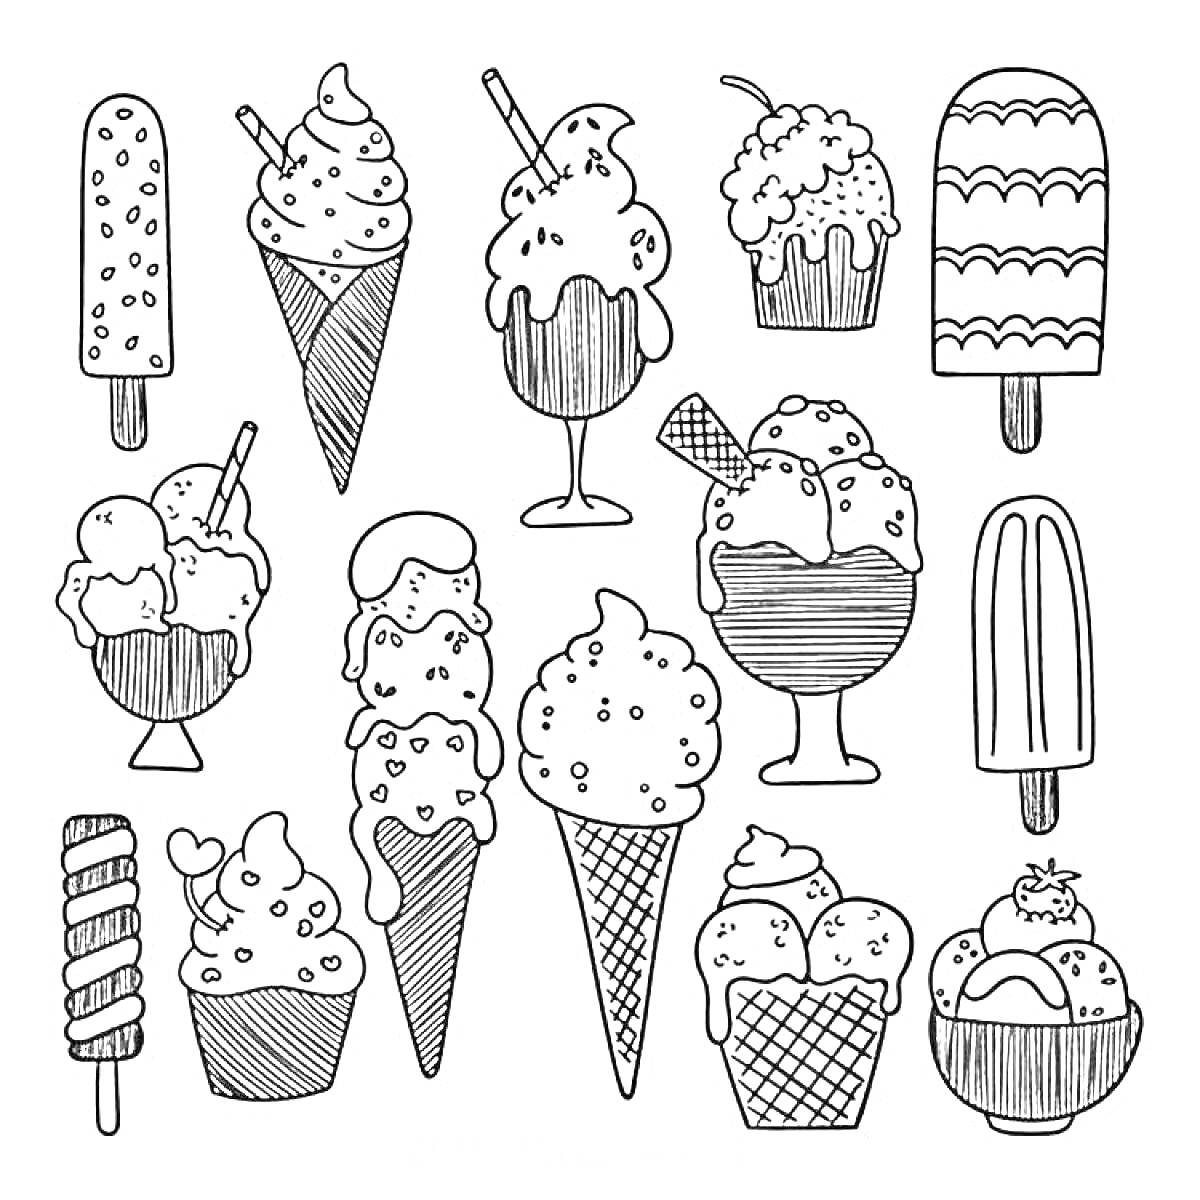 Набор стикеров с различными видами мороженого (эскимо, рожок, фруктовый лед, мороженое в стакане, мороженое с вафлей)